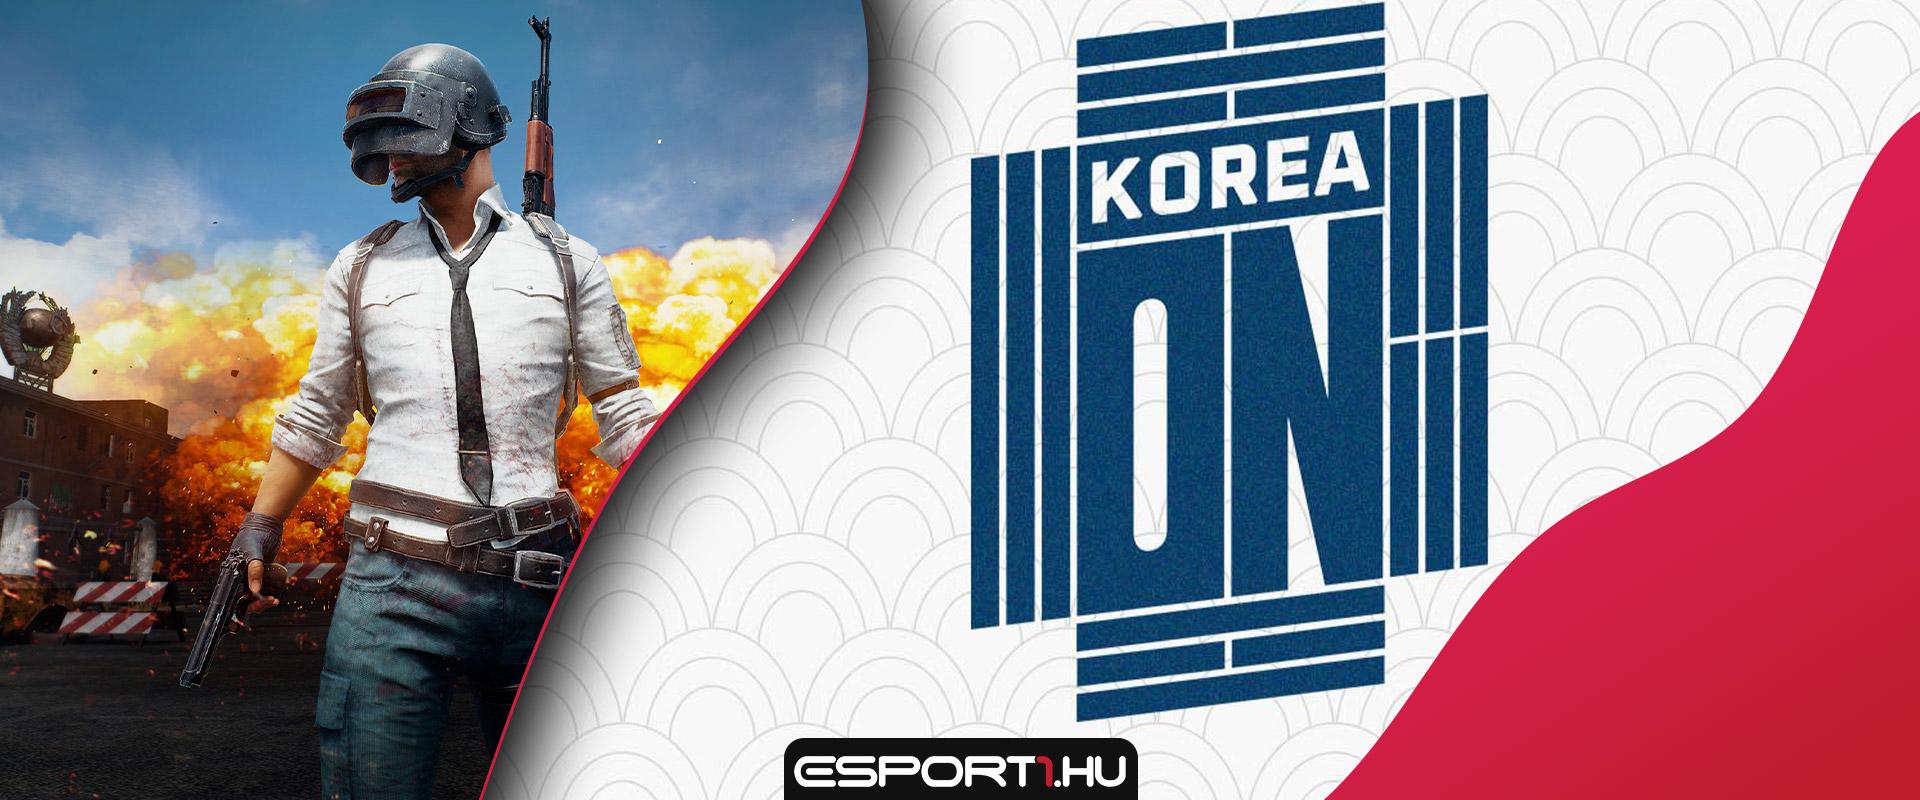 Program: E-sporttól a k-popig, koreai kultúrák fesztiválja zárja a hetet